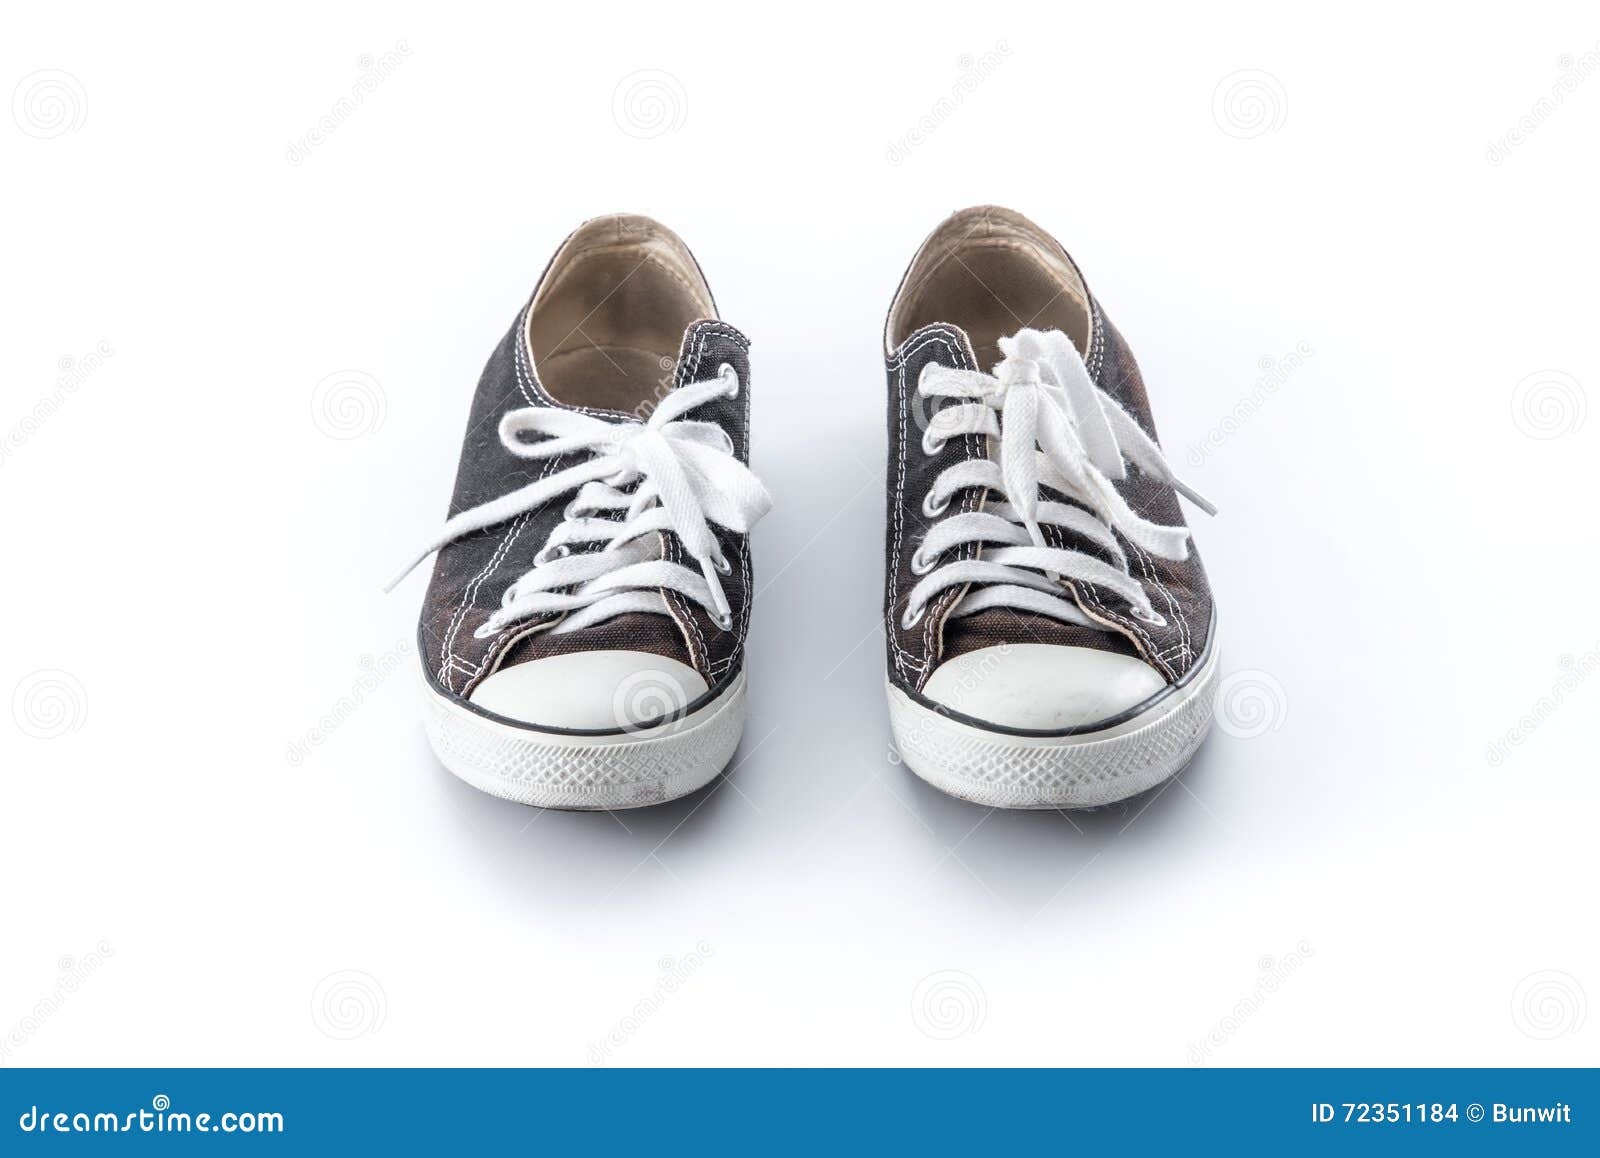 Black Grunge Shoes on White Stock Photo - Image of shoes, background ...